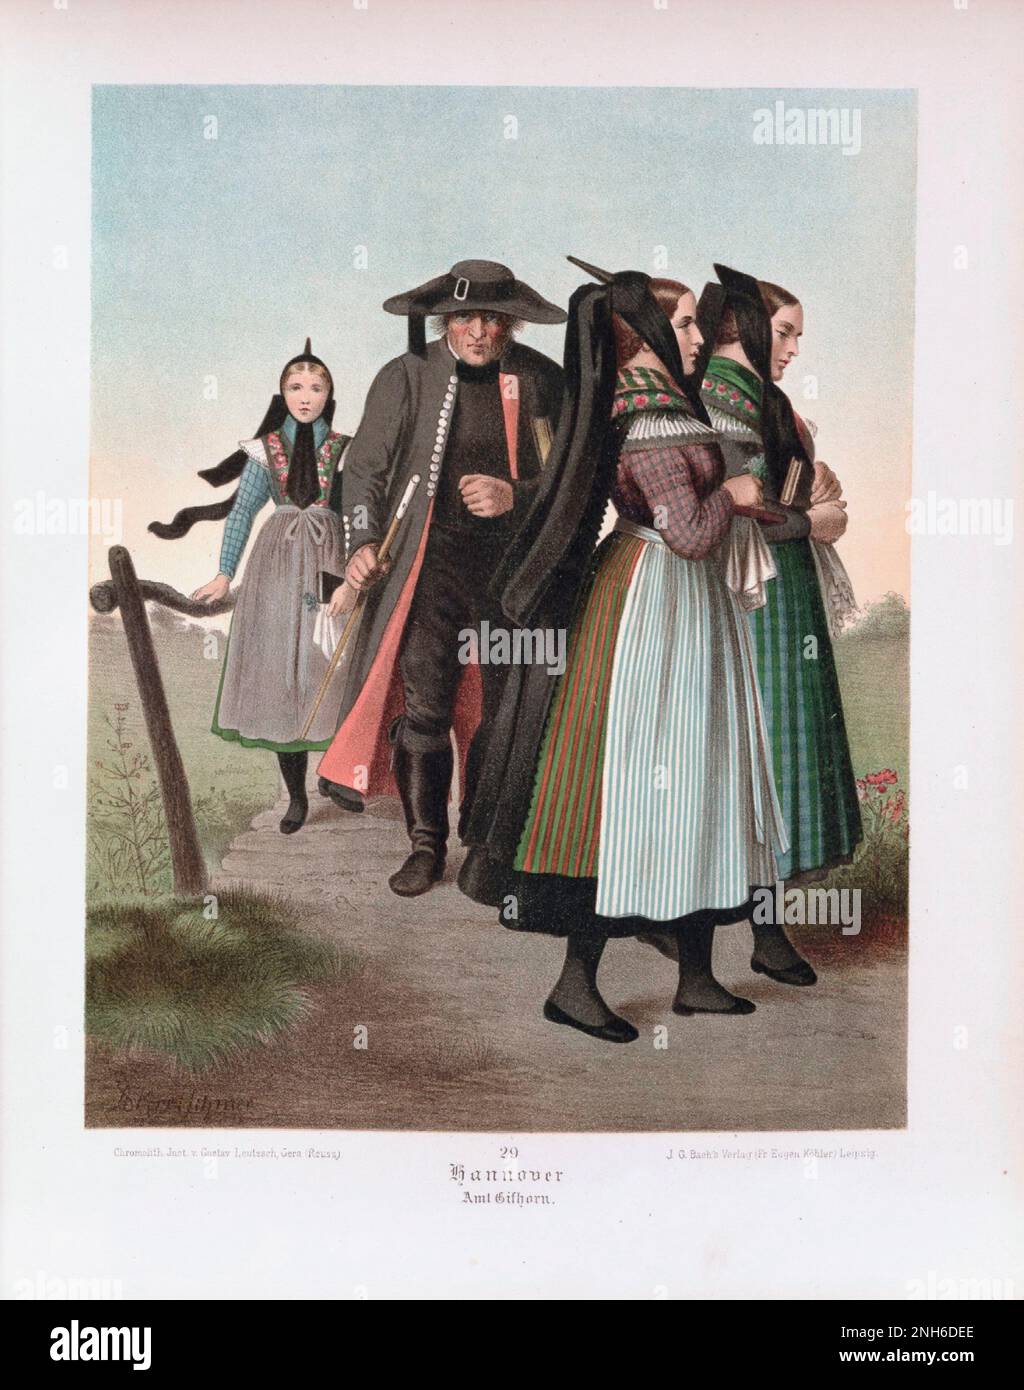 Disfraz folclórico alemán. Hannover (alemán: Hannover). litografía del siglo 19th. Foto de stock